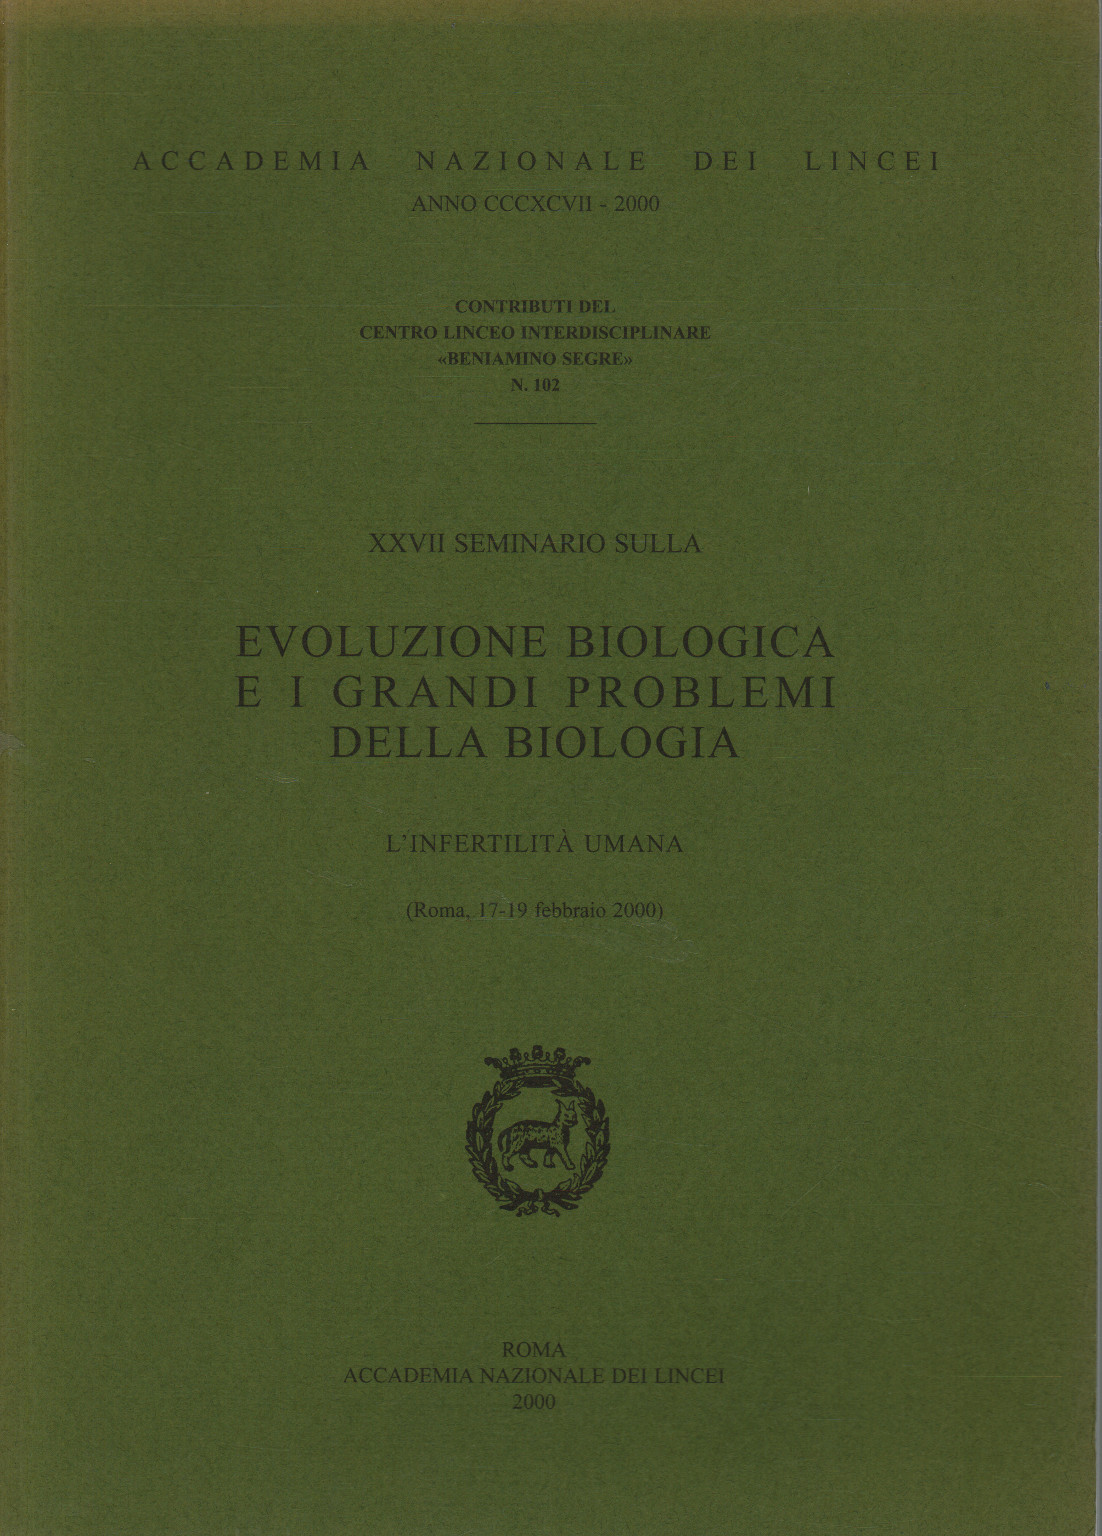 XVII seminario sulla evoluzione biologica e i gran, s.a.